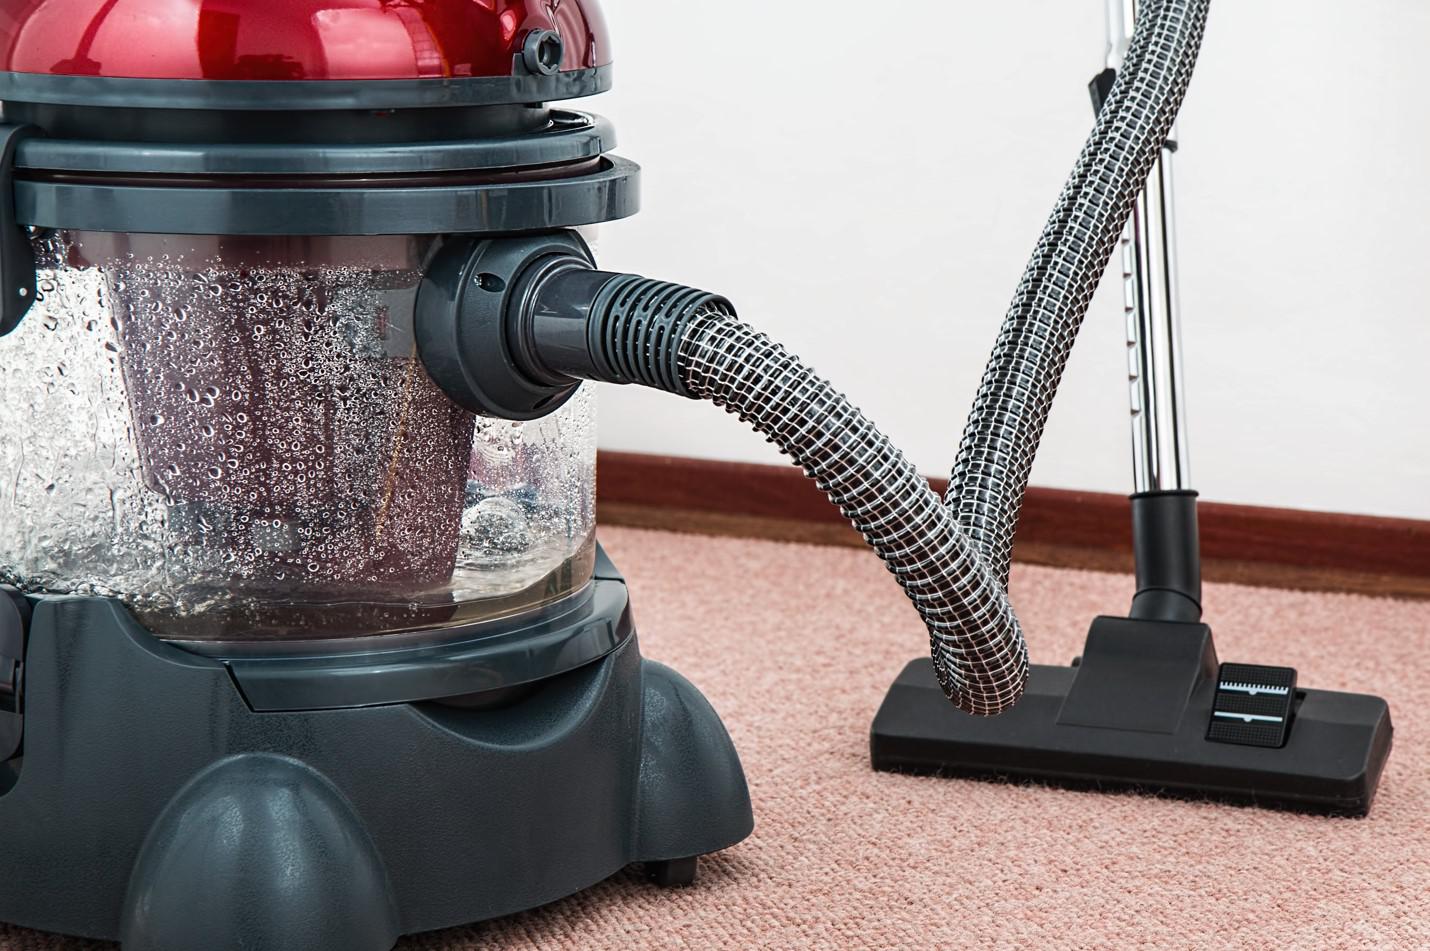 Моющие пылесосы подходят для очистки не только полов, но также мягкой мебели и ковров